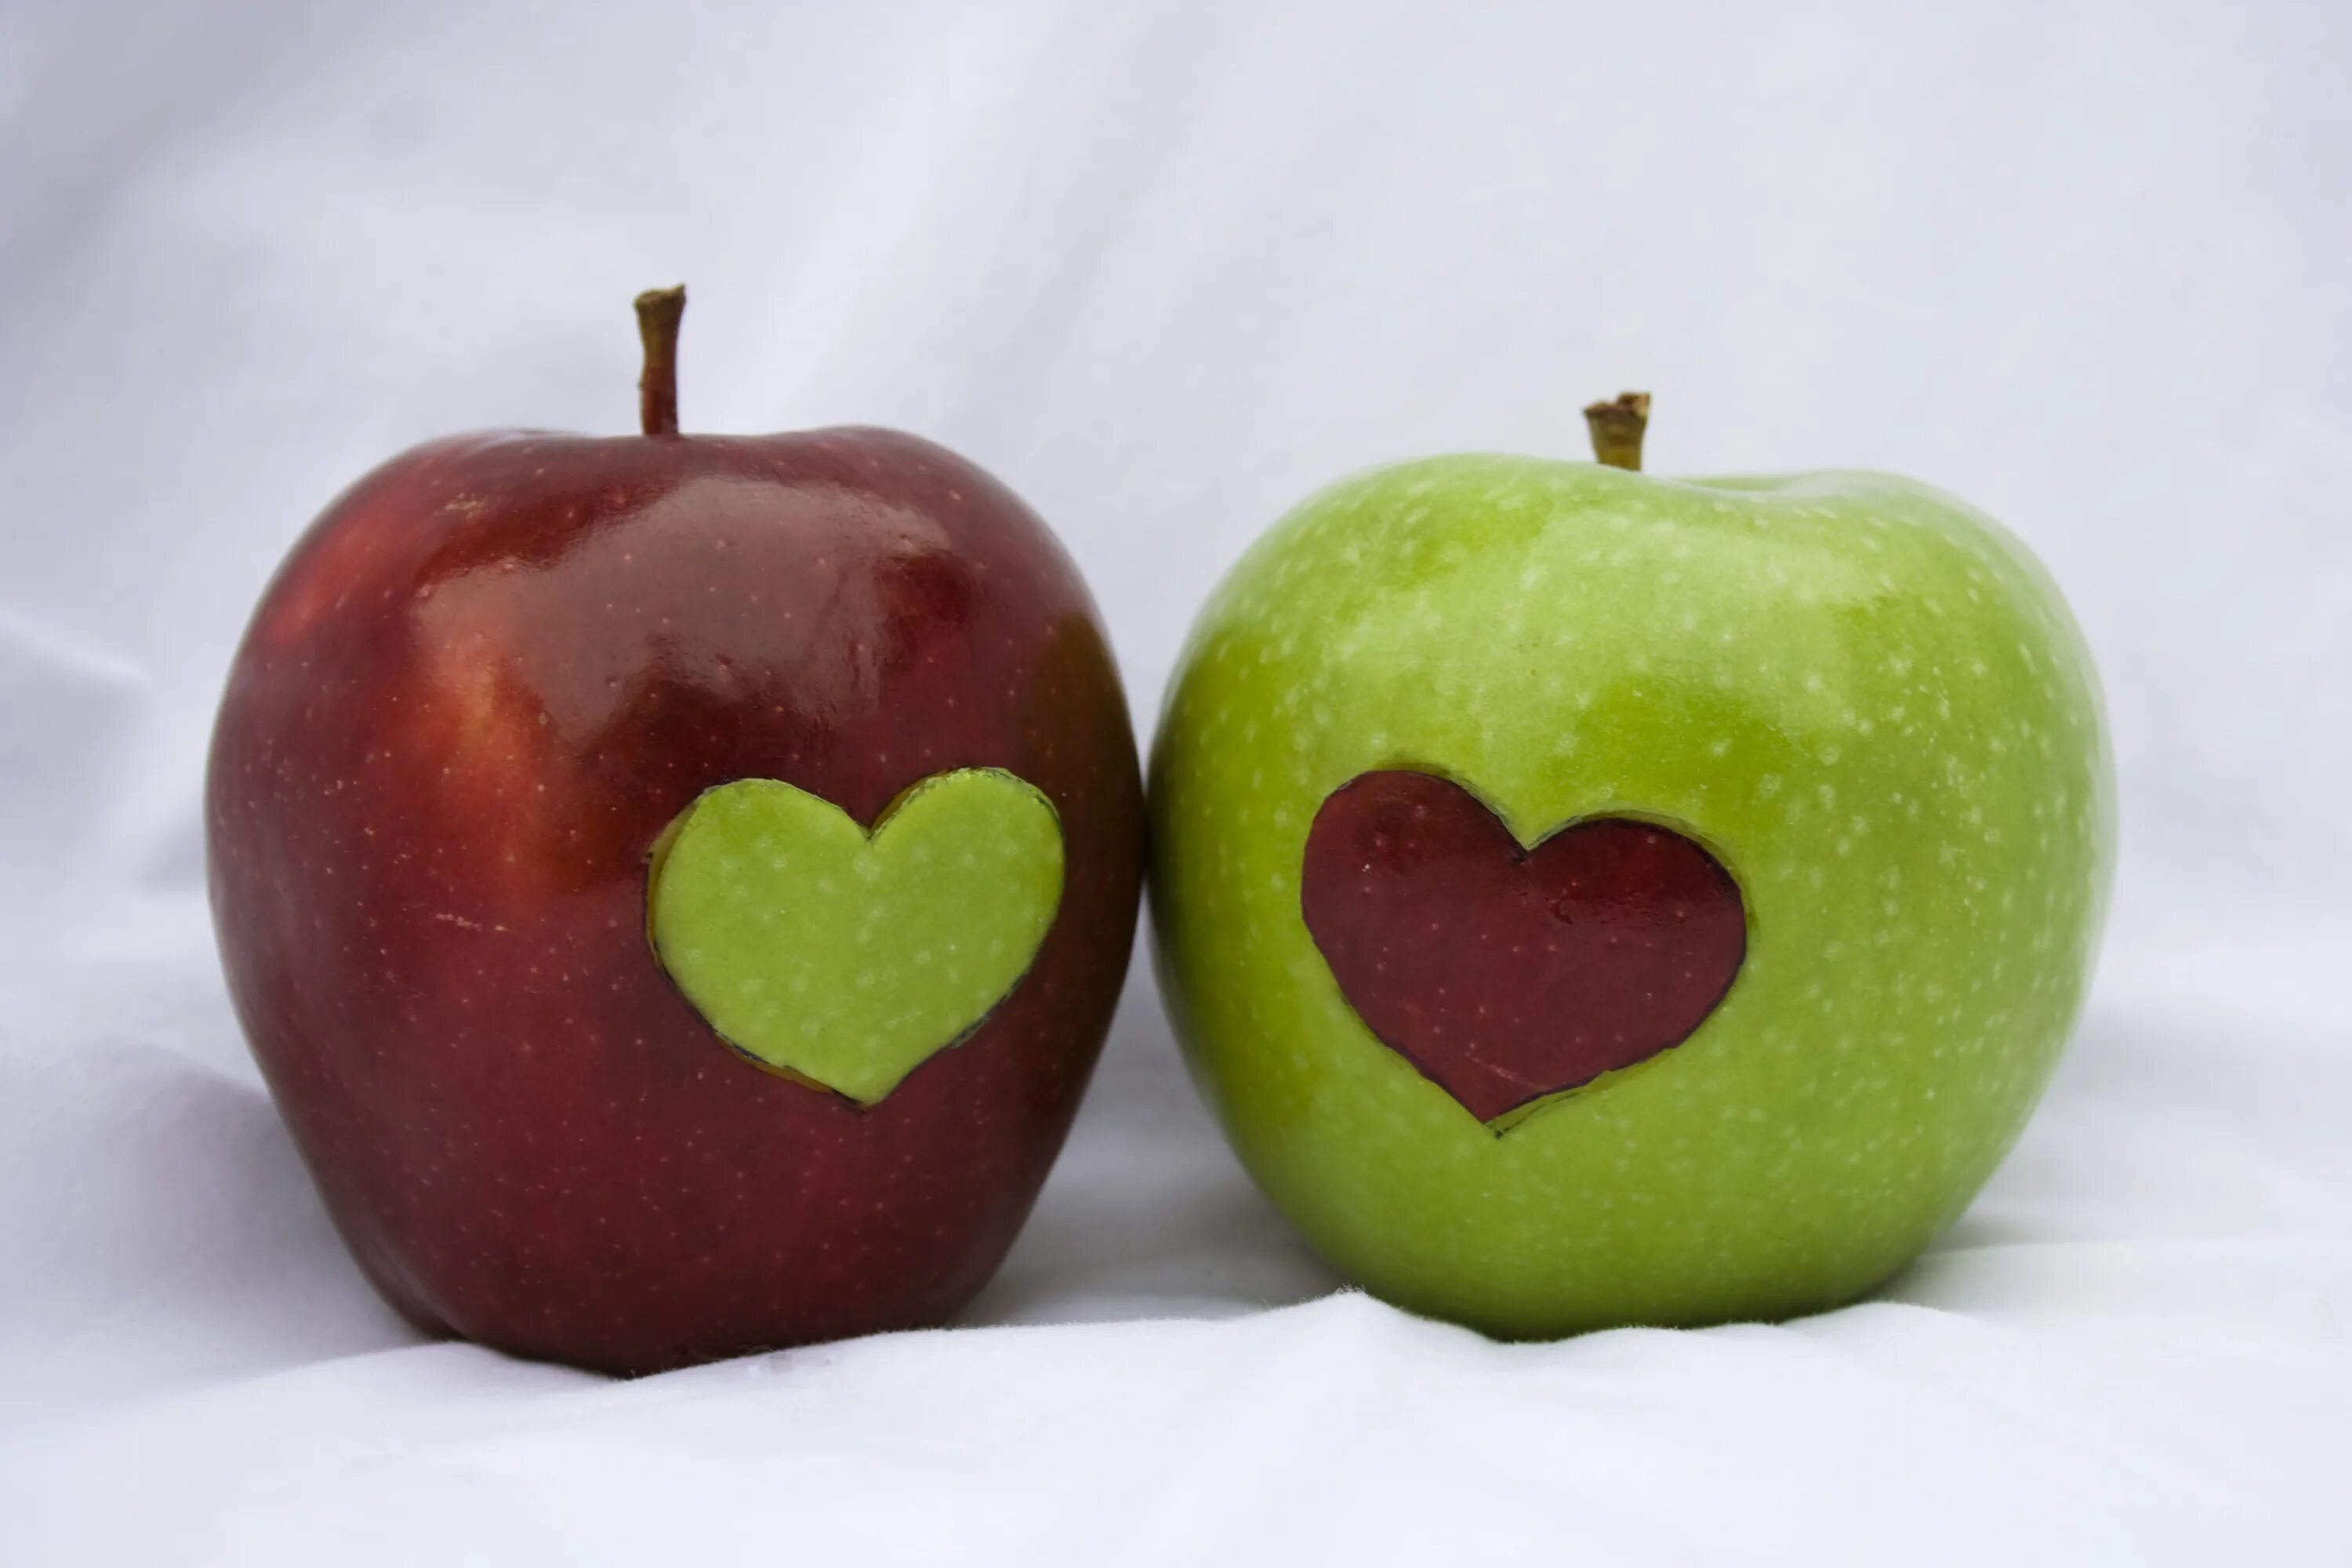 Игры 2 яблока. Яблоко в форме сердца. Половинка яблока. Две половинки яблока. Фрукты в форме сердца.